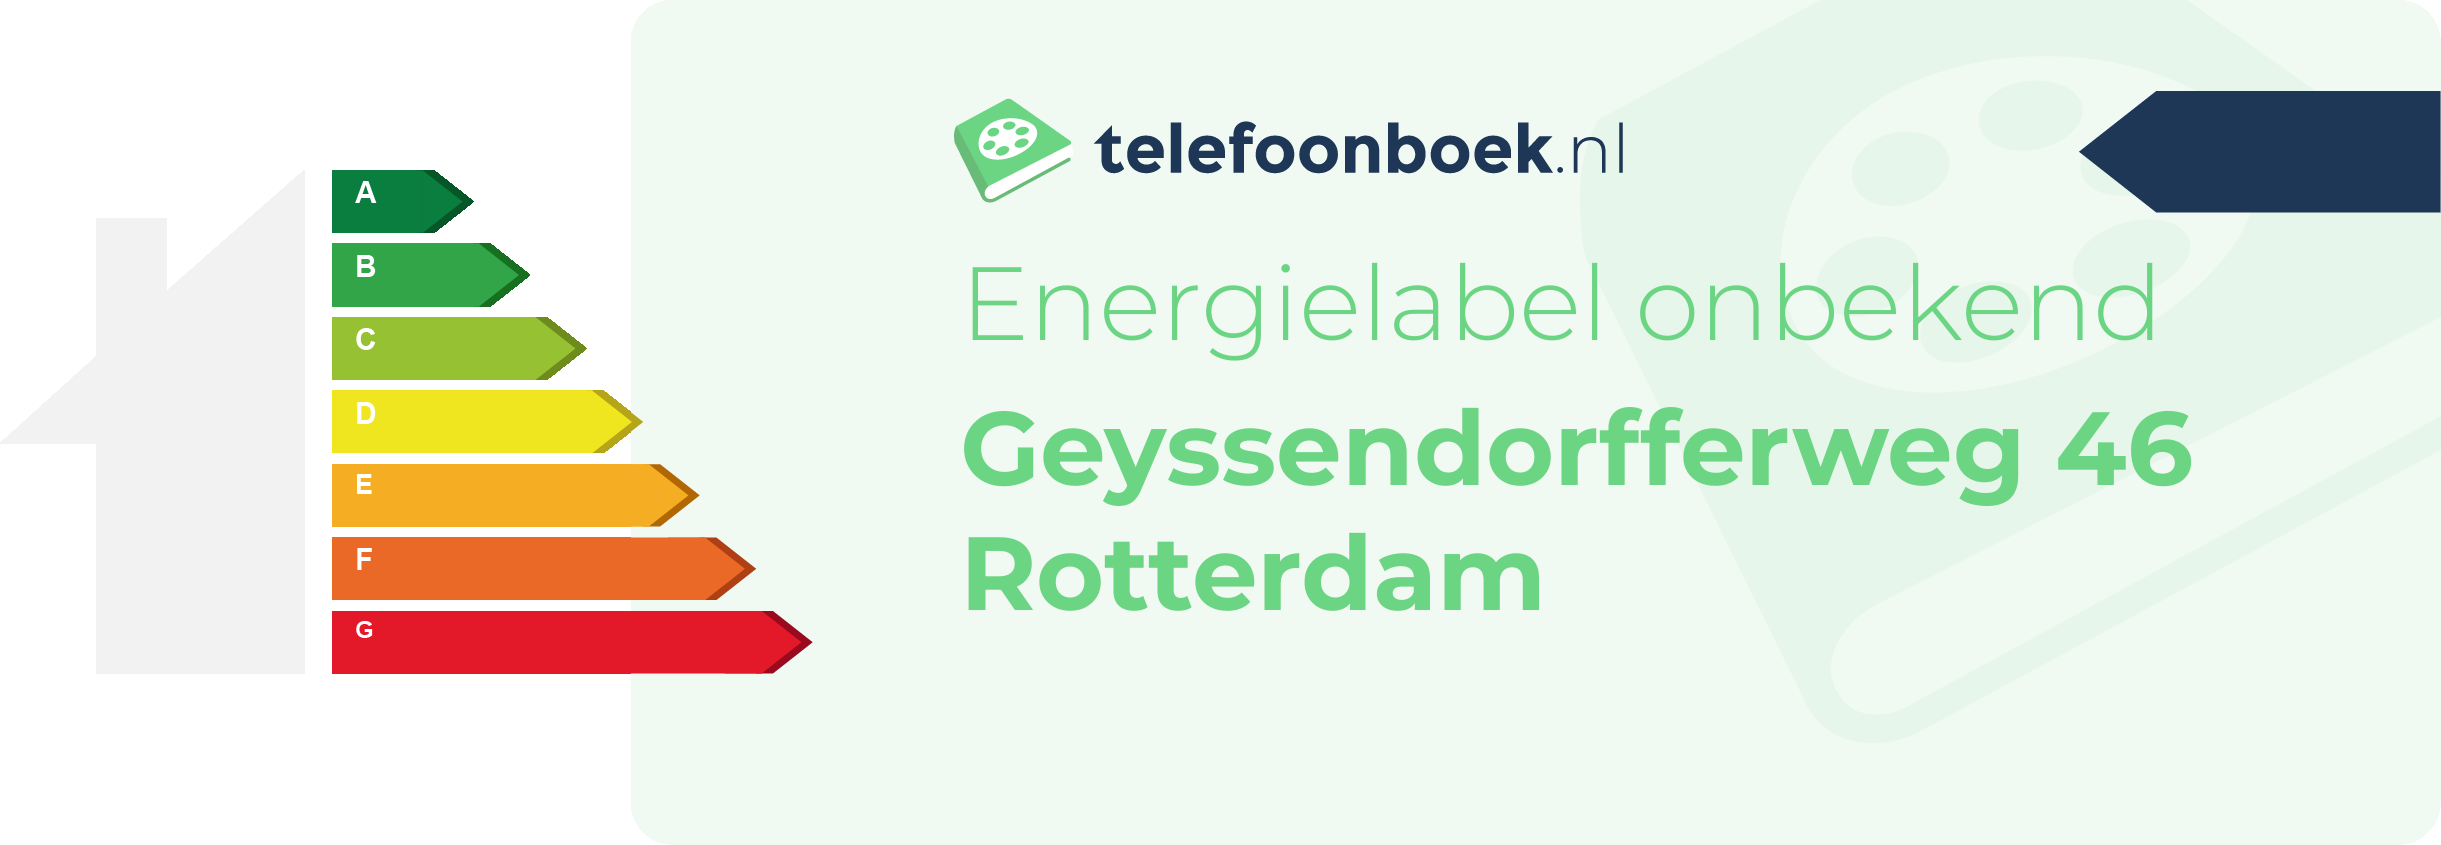 Energielabel Geyssendorfferweg 46 Rotterdam